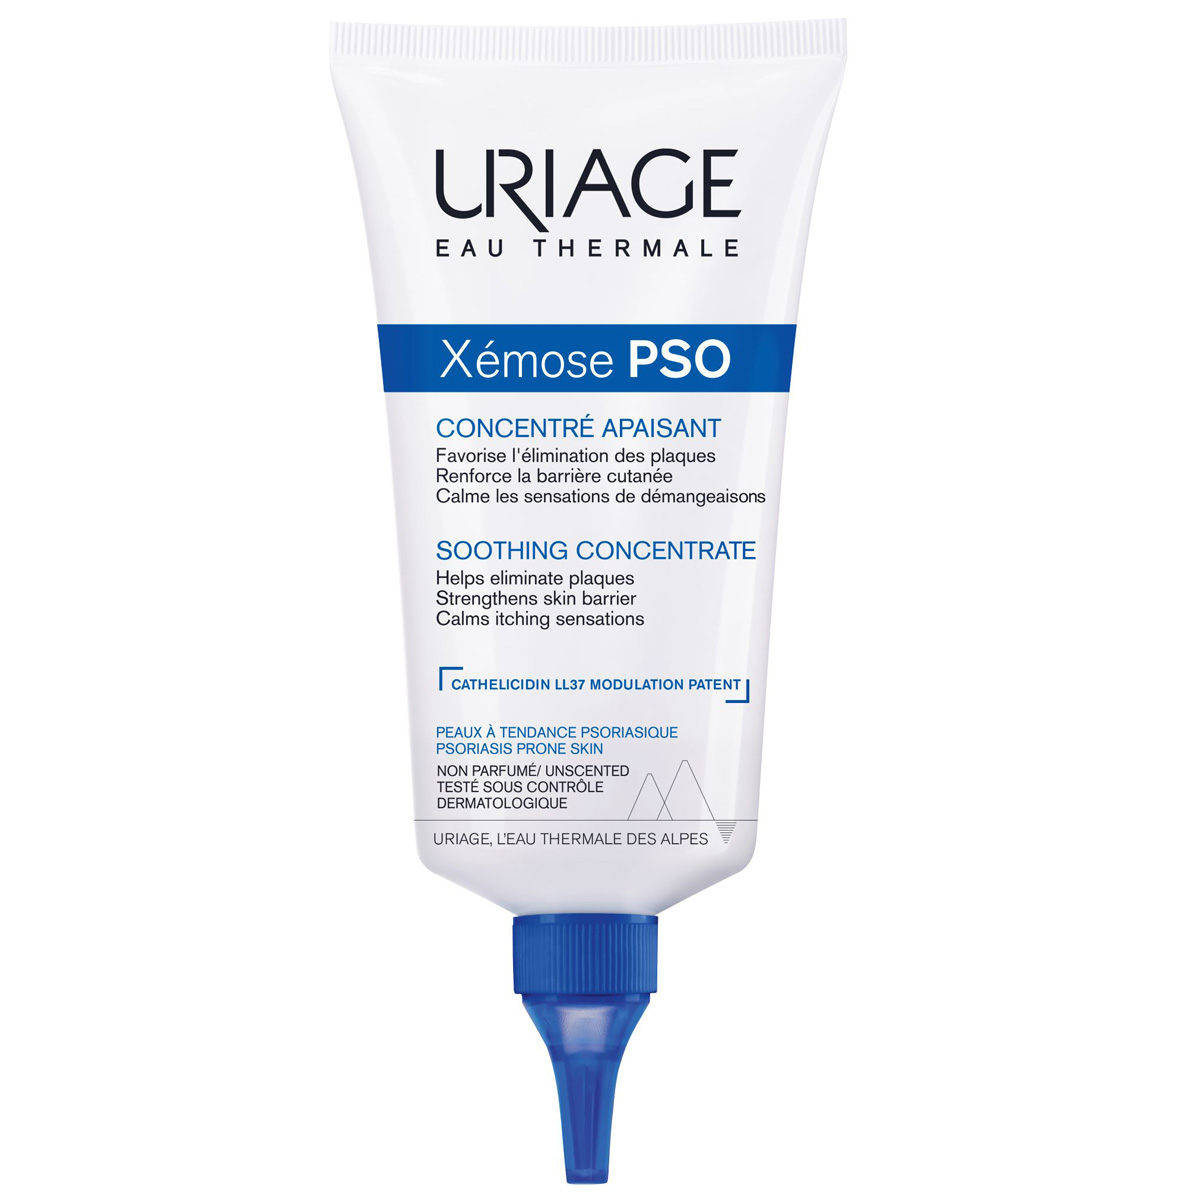 цена Uriage Успокаивающий крем-концентрат PSO, 150 мл (Uriage, Xemose)